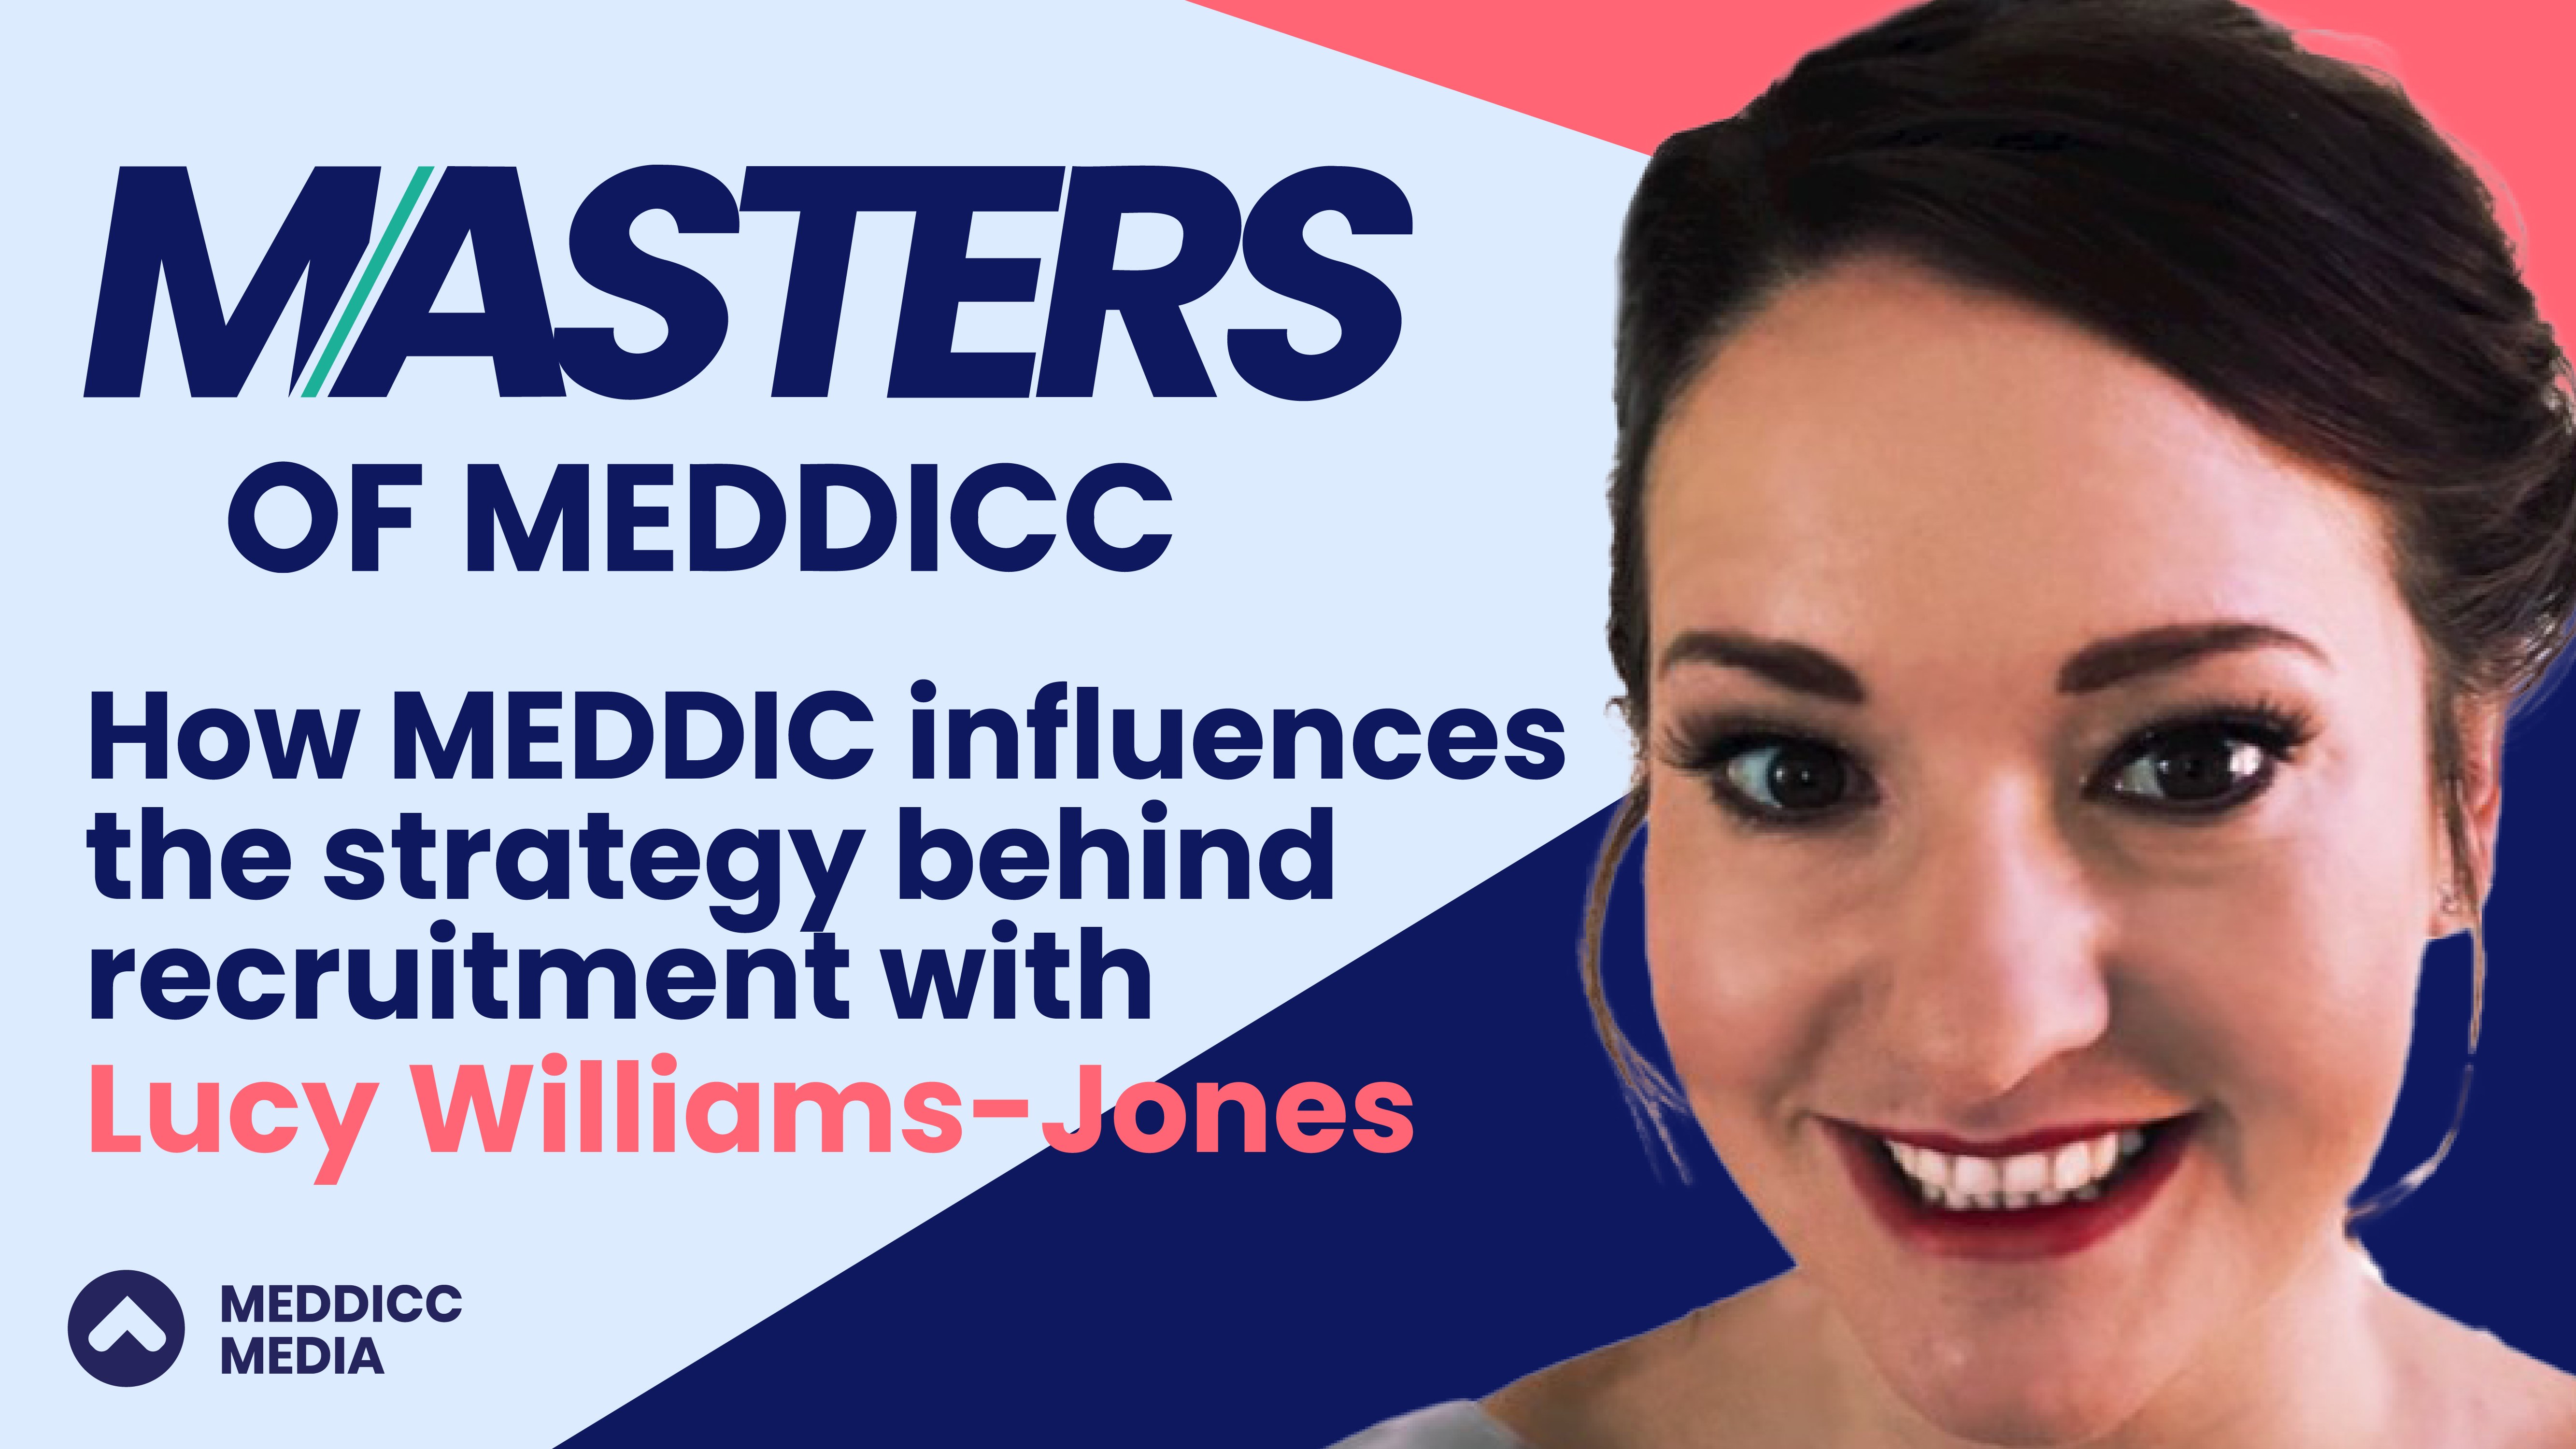 Masters of MEDDICC: Lucy Williams-Jones